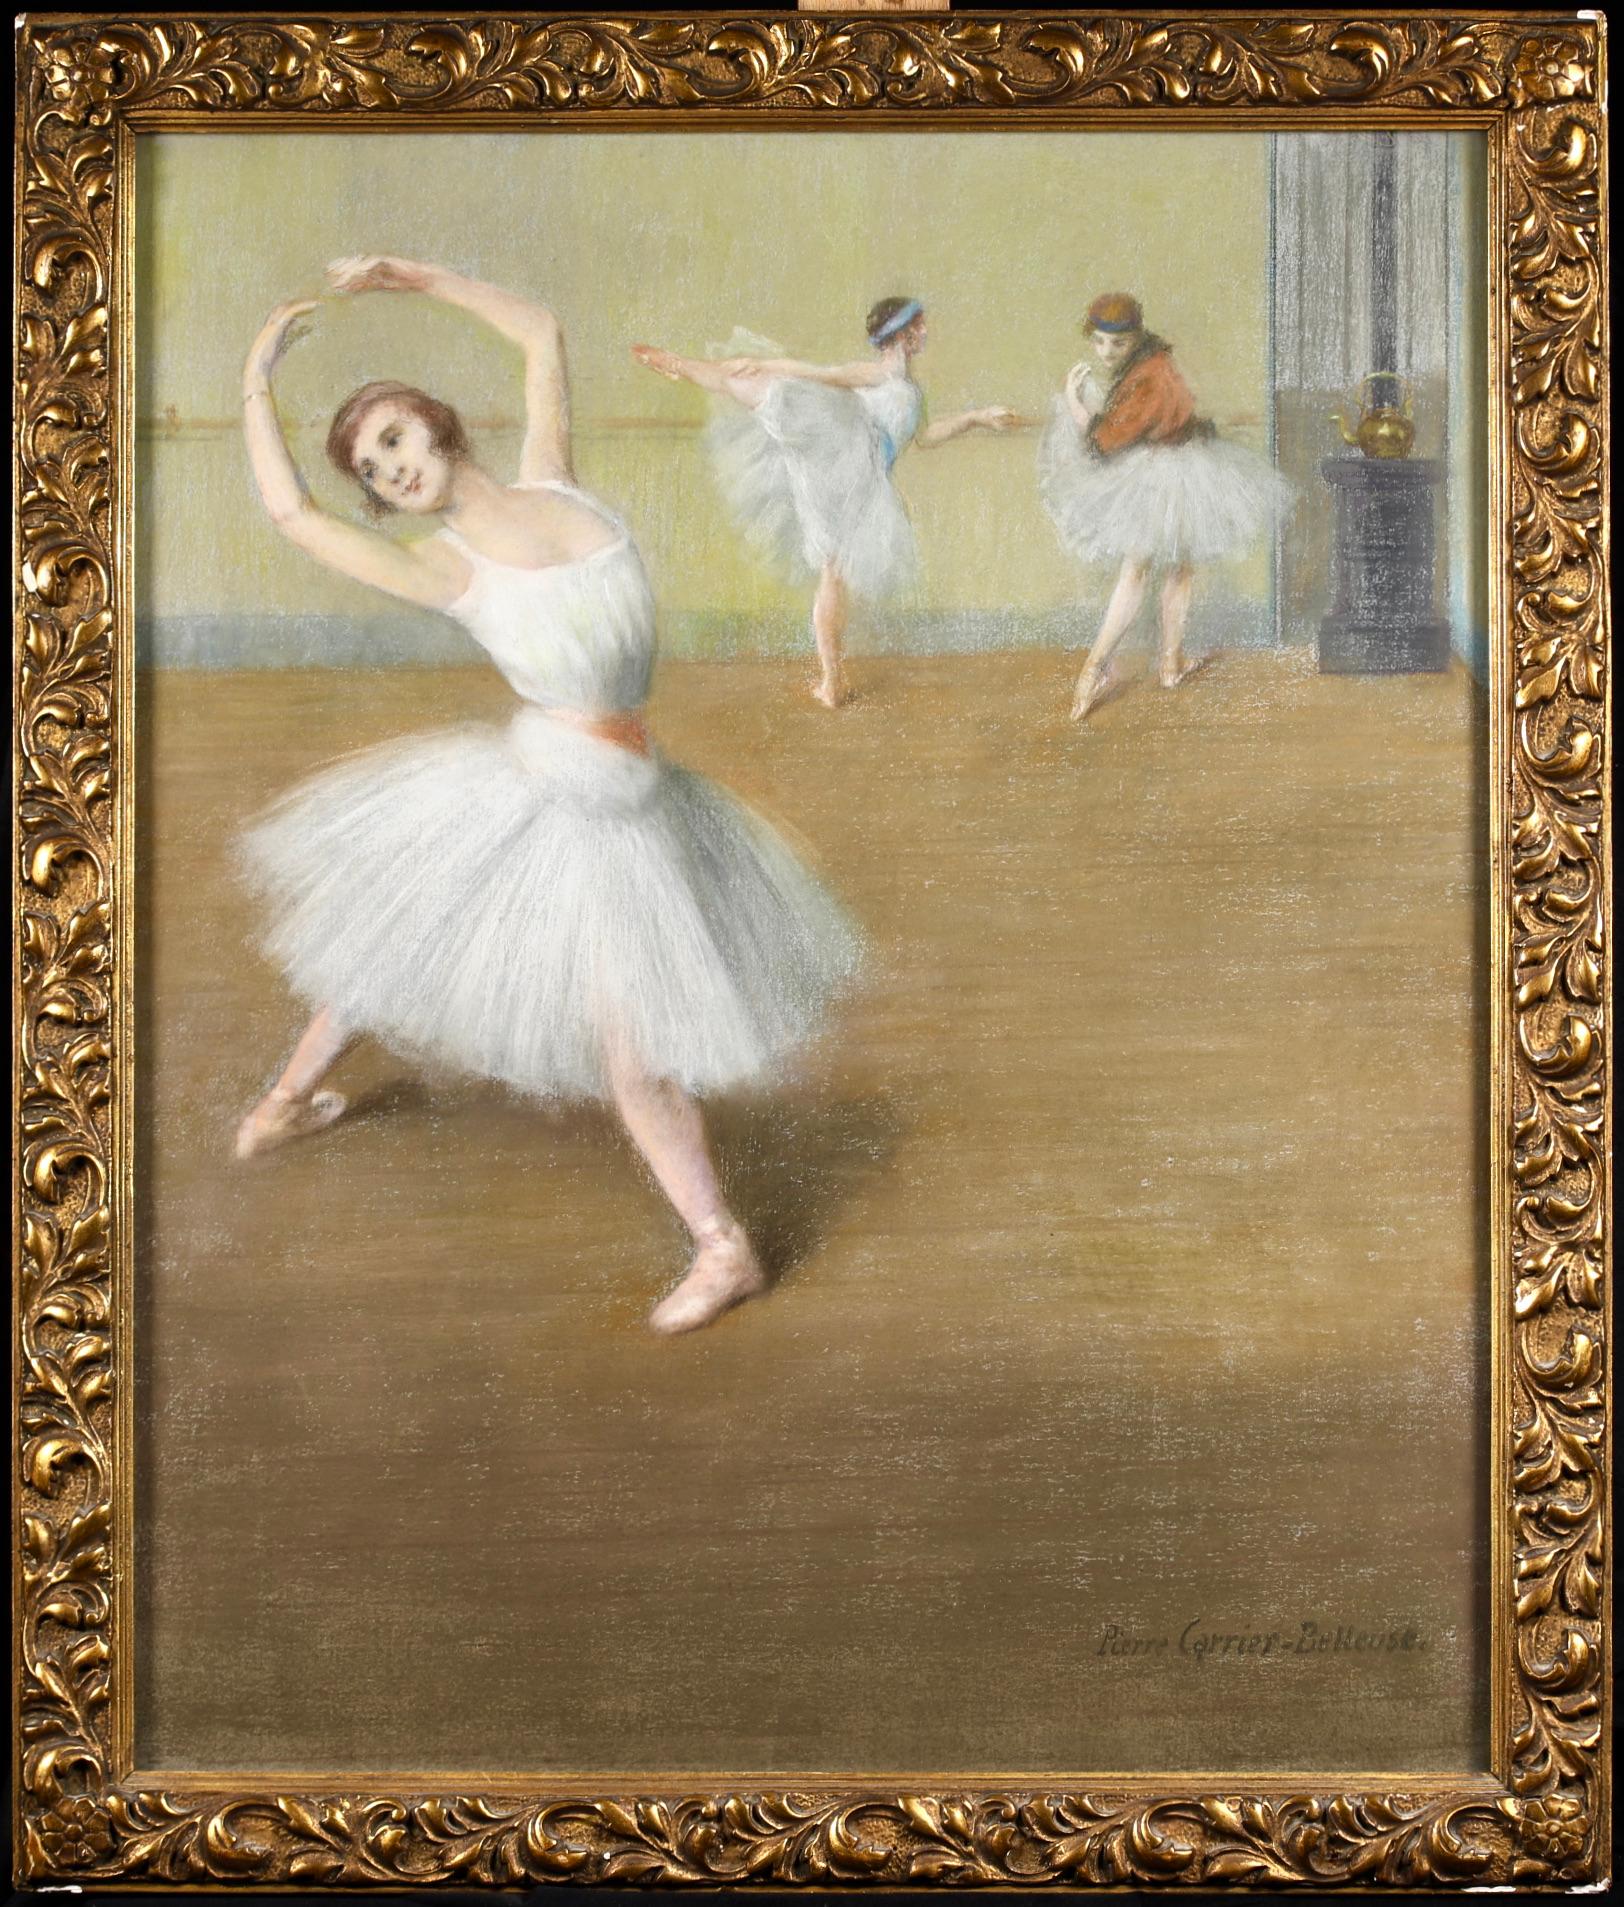 Signiertes figuratives Pastell auf Leinwand um 1910 des französischen Genremalers Pierre Carrier-Belleuse. Das Werk zeigt drei Ballerinas in weißen Tutus, die sich in einem Studio aufwärmen. Carrier-Belleuse war eine Zeitgenossin von Edgar Degas und